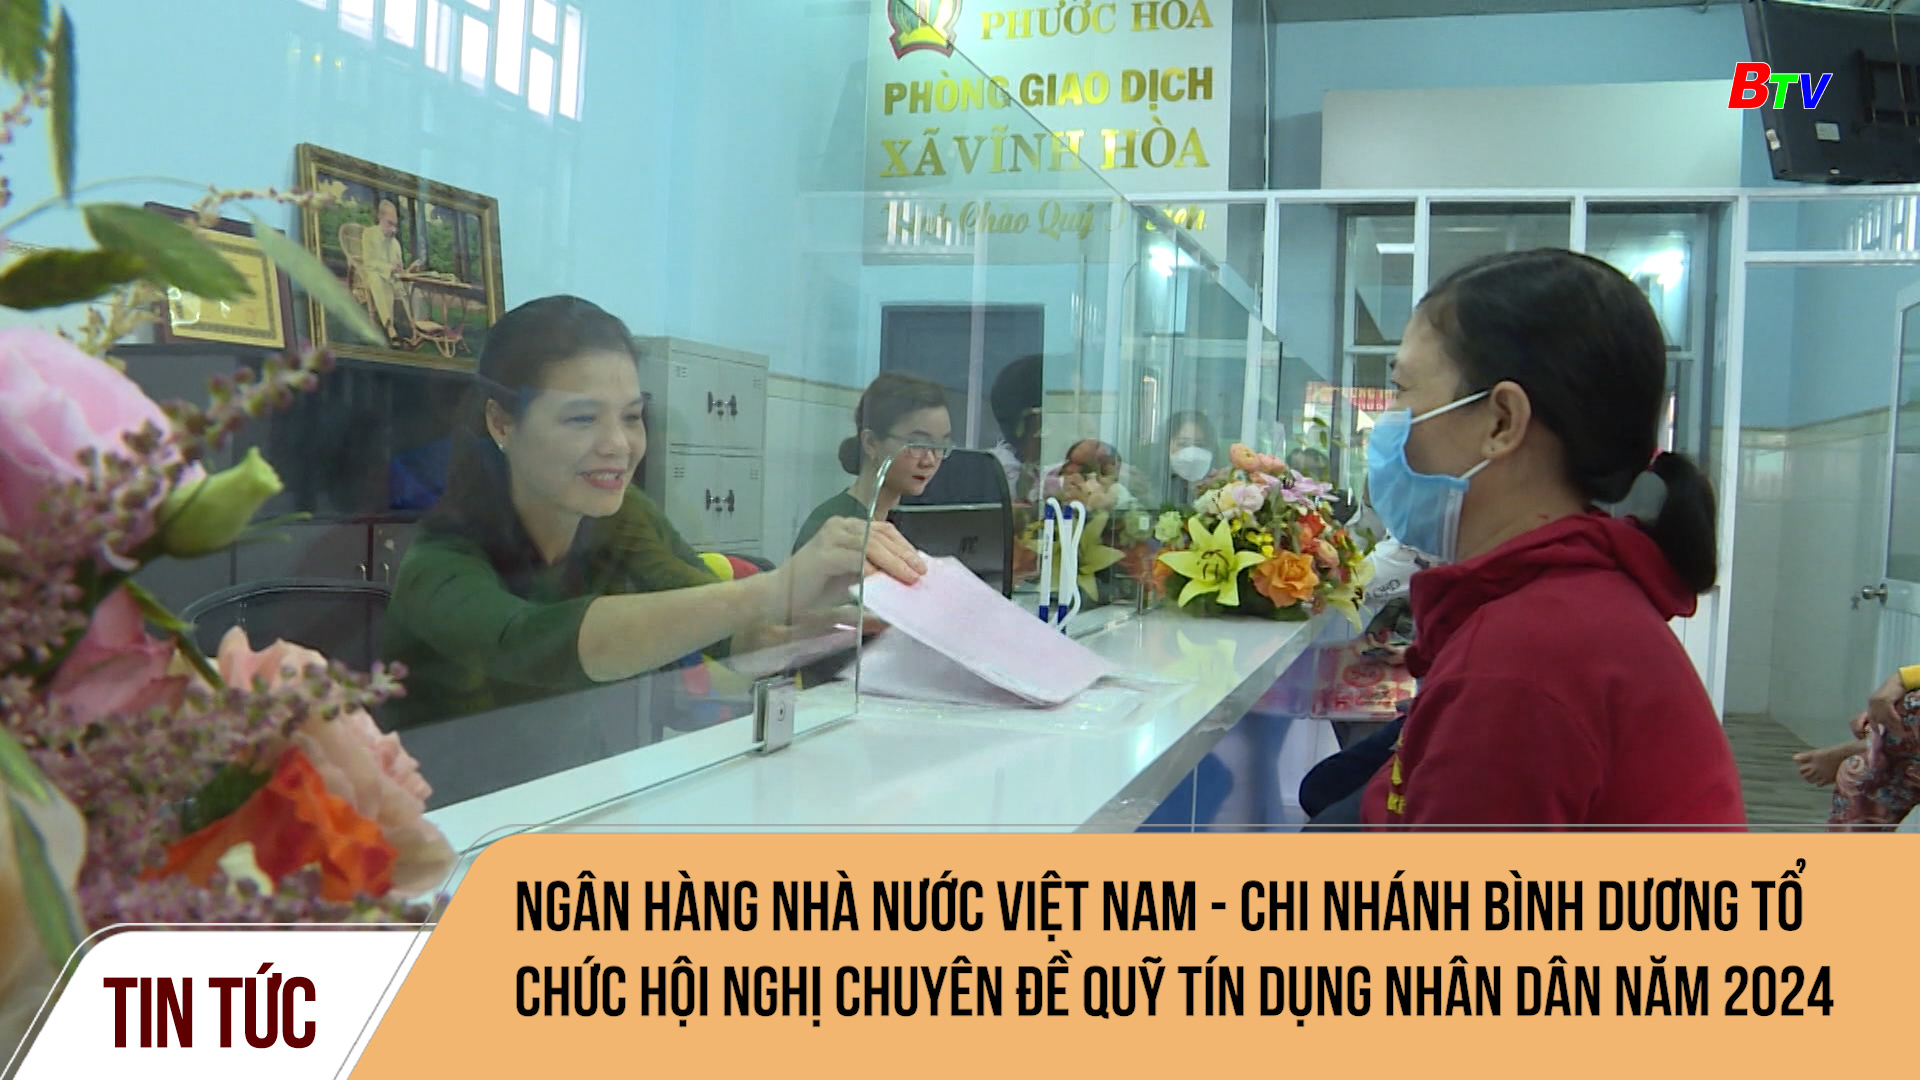 Ngân hàng Nhà nước Việt Nam - chi nhánh Bình Dương tổ chức hội nghị chuyên đề Quỹ tín dụng nhân dân năm 2024